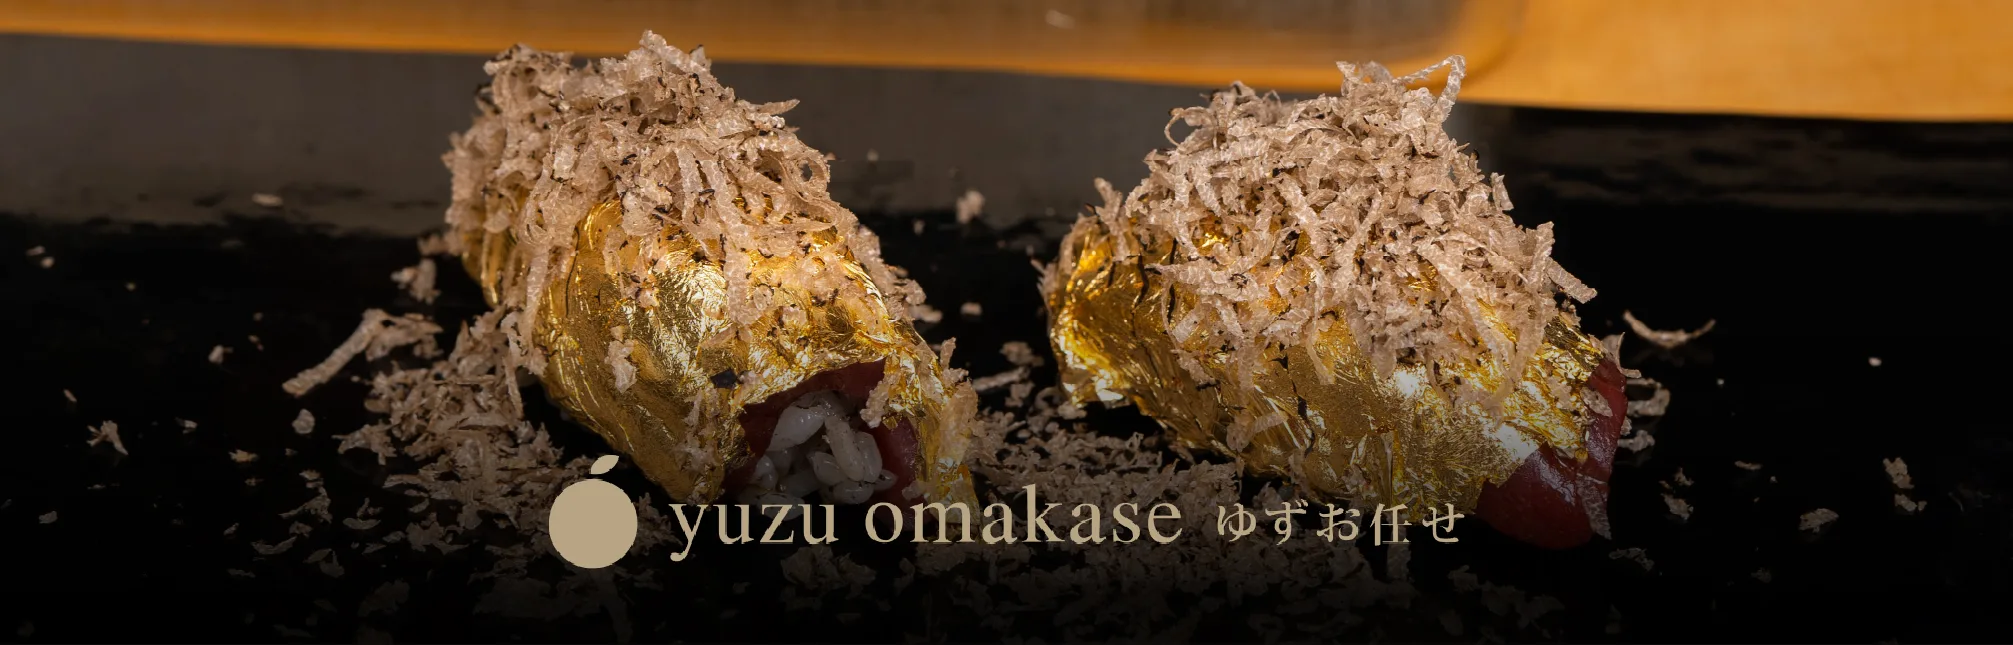 Akami Gold sushi